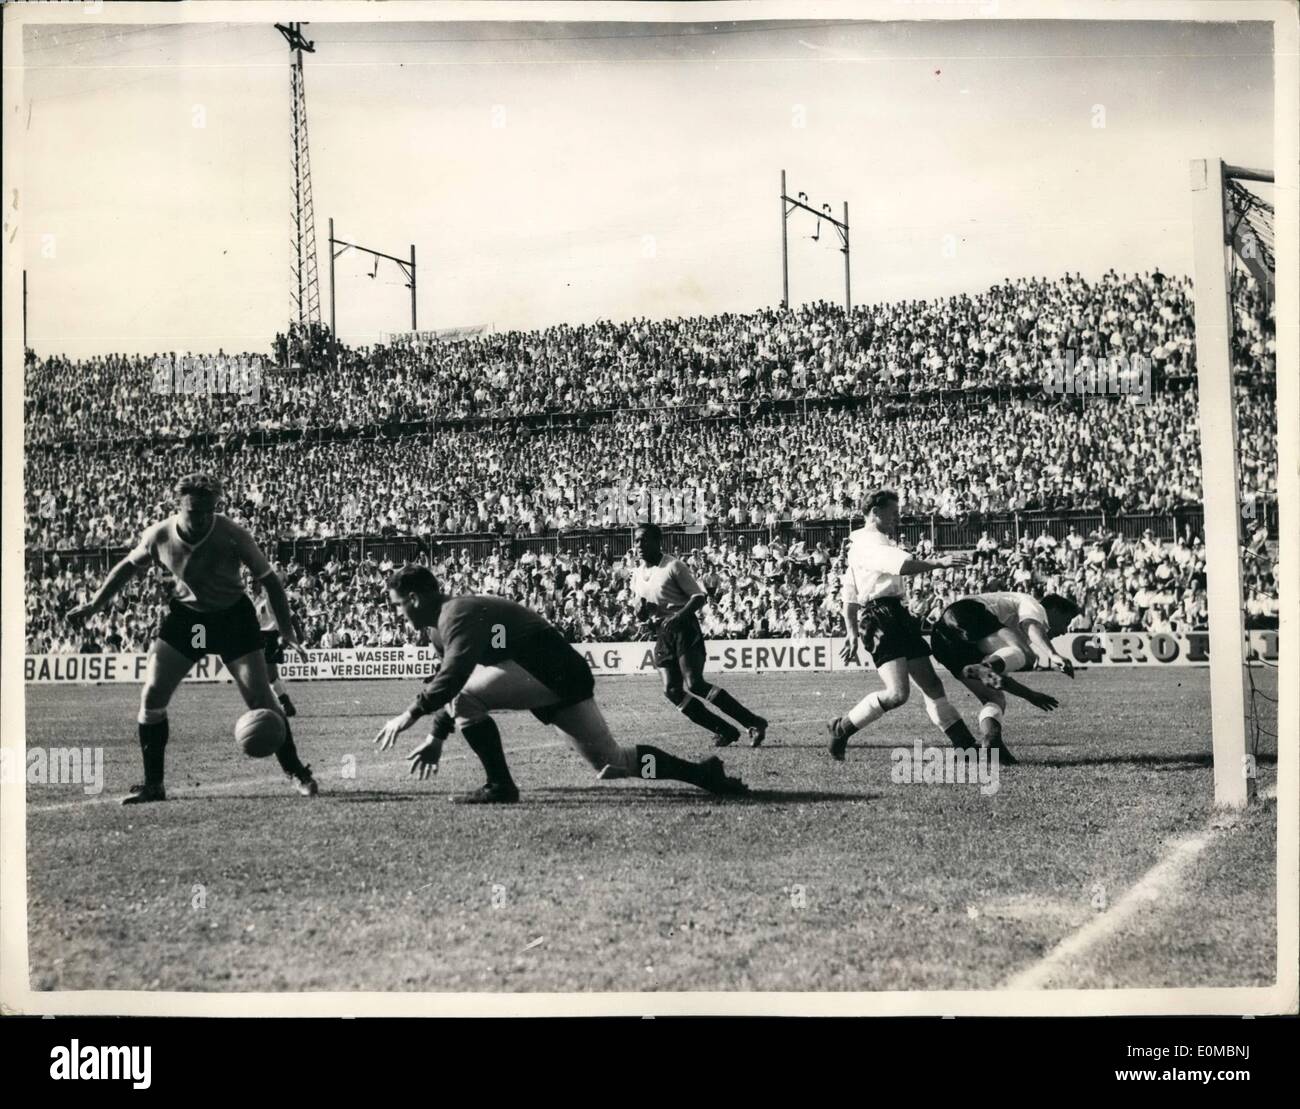 Juin 06, 1954 - L'Uruguay a battu l'Angleterre en Worldcup match. : l'Angleterre ont été battus par 4 buts à 2 dans le match de Coupe du Monde contre l'Uruguay hier, à Bâle. Photo montre le gardien uruguayen, Laurenti, efface la balle de deux Français en avant qui rush sur pratiquement dans le filet. Banque D'Images